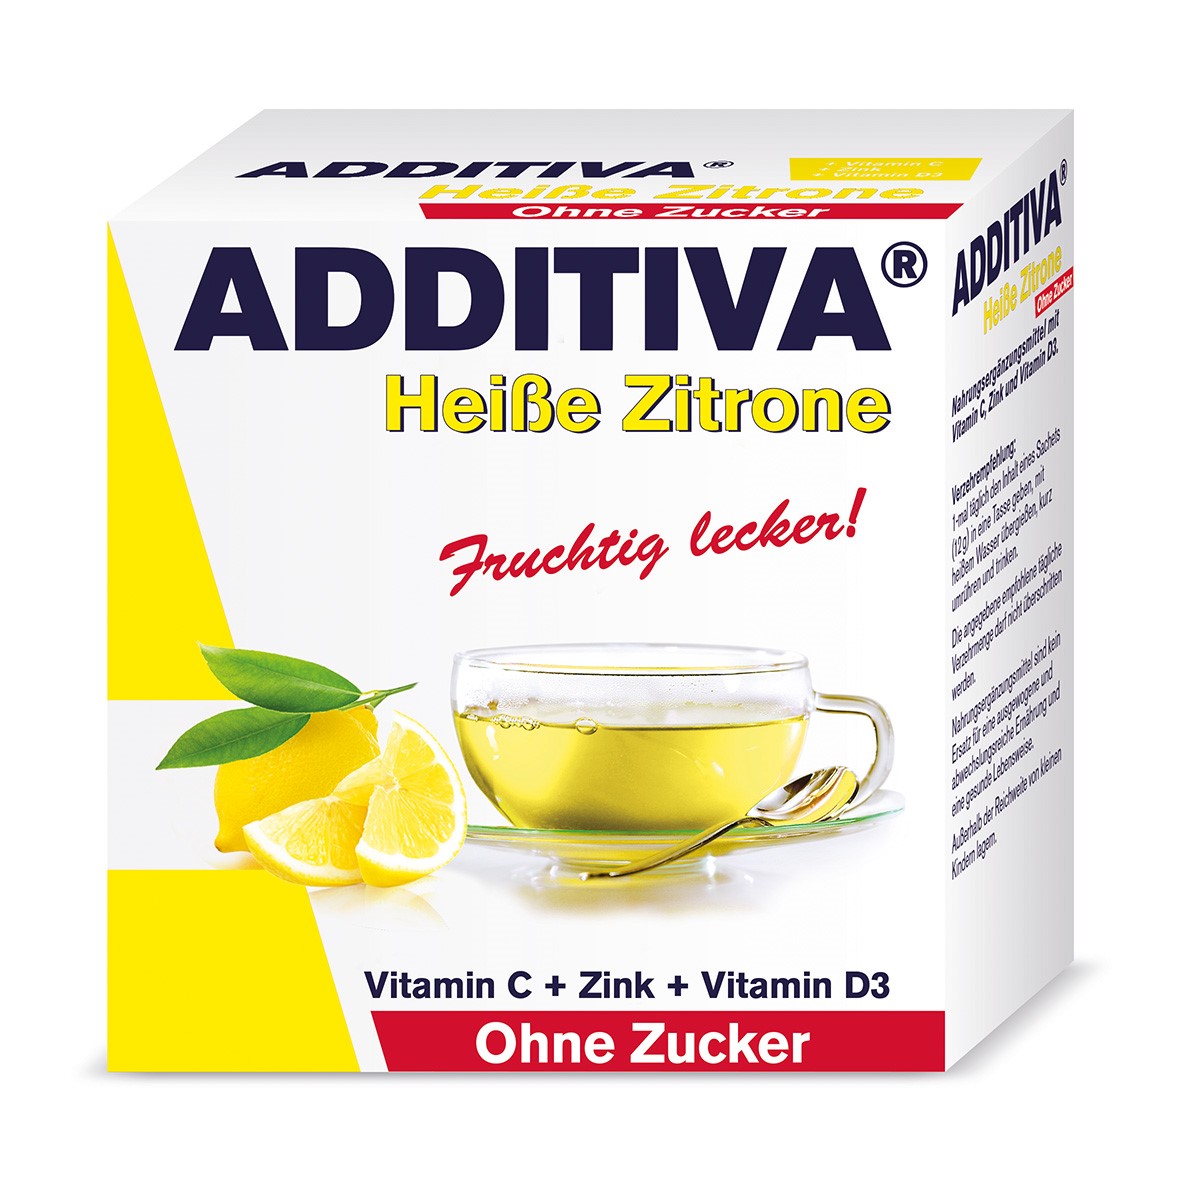 Additiva heisse Zitrone ohne Zucker (100 g)